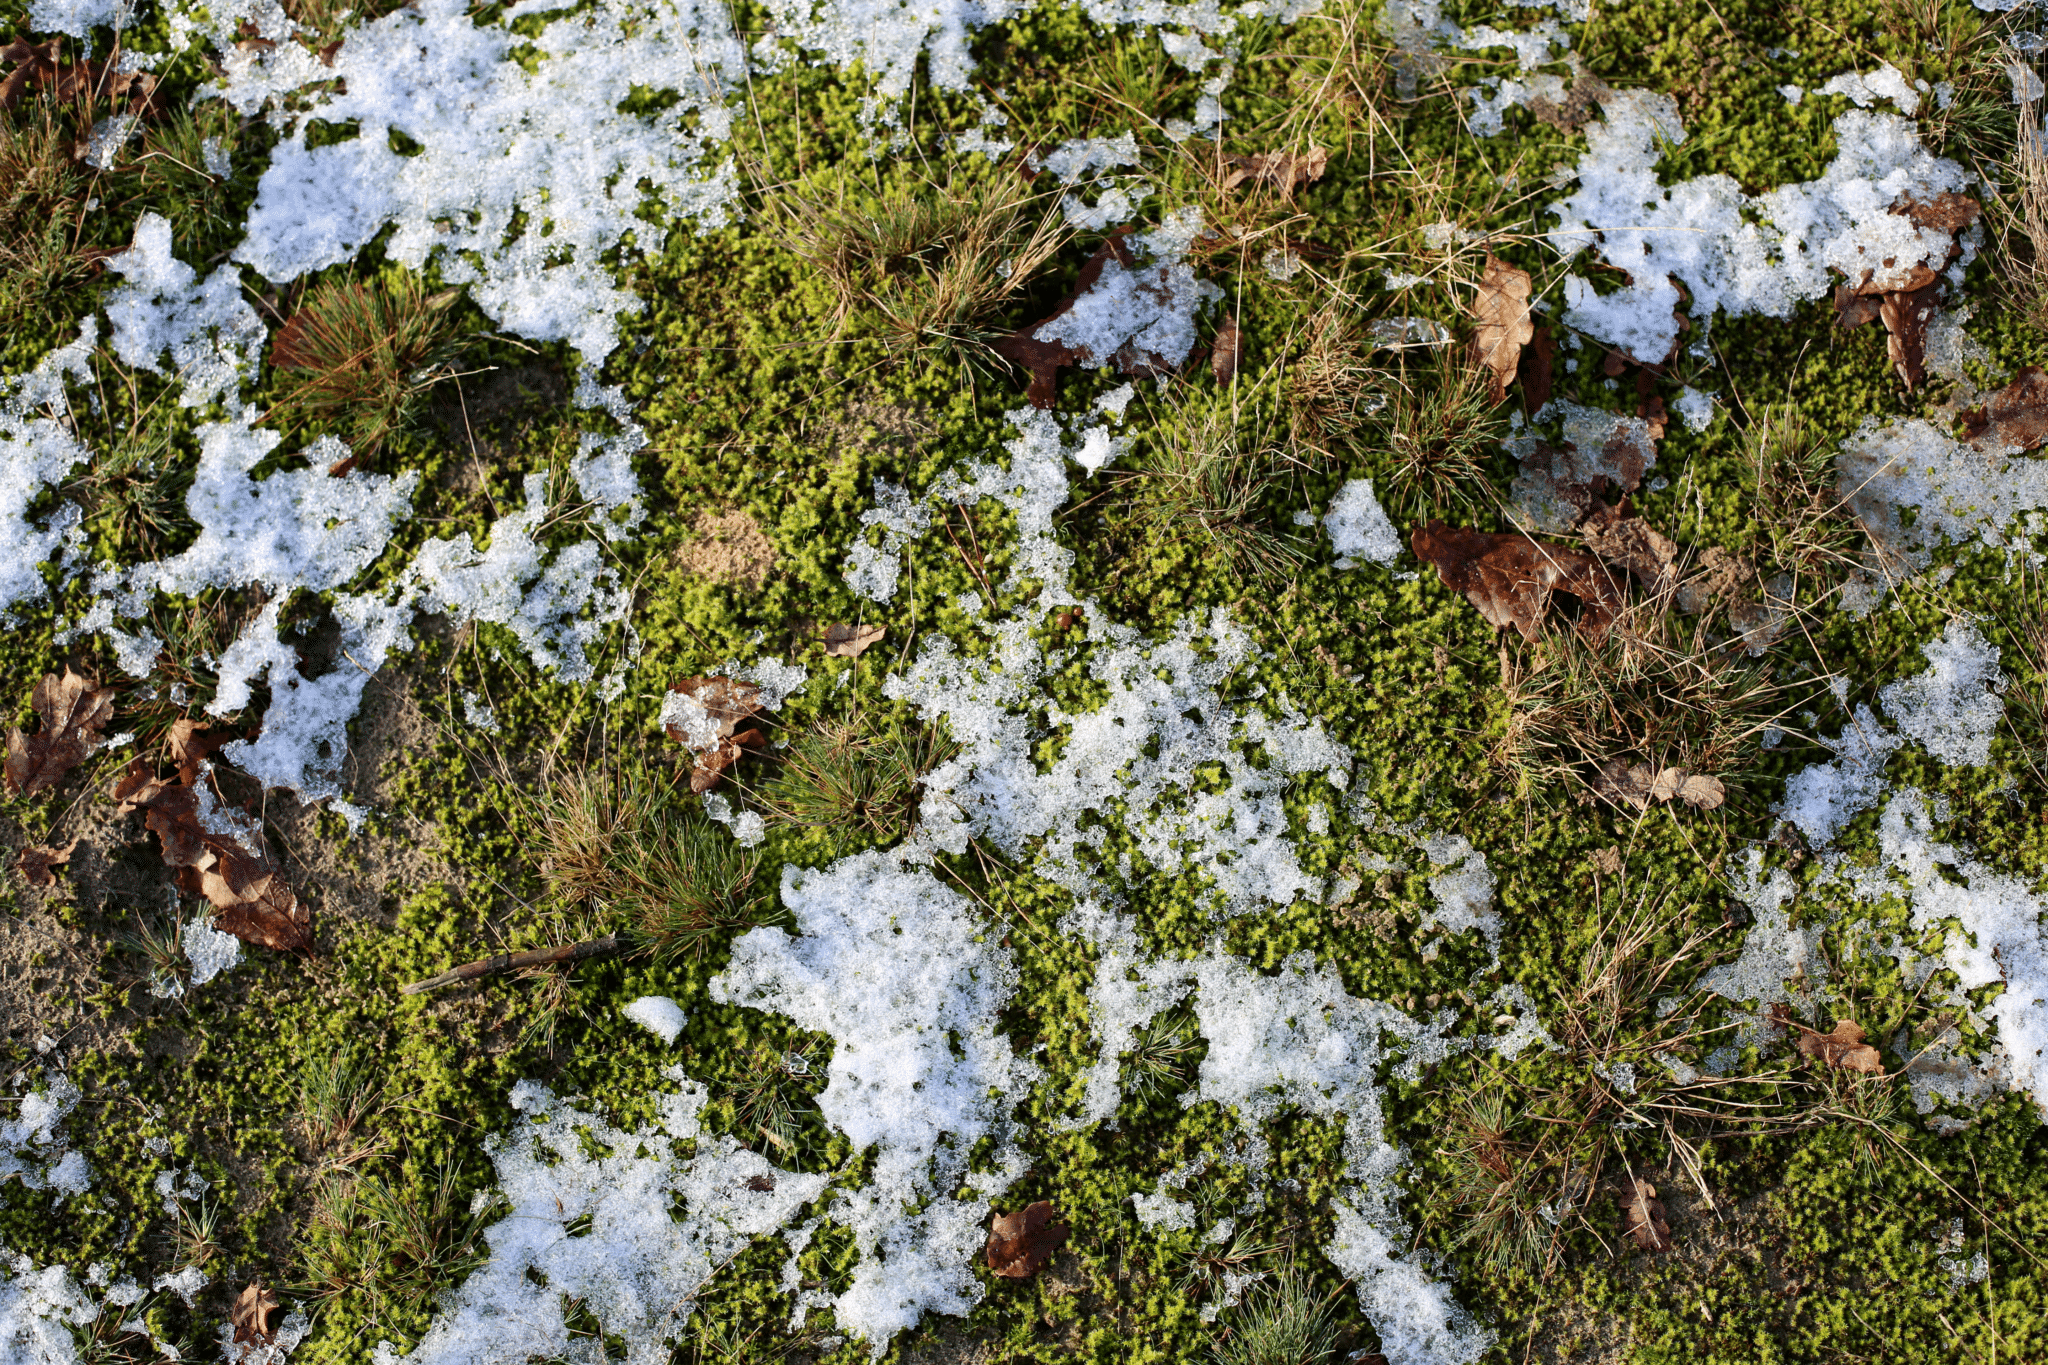 gras met restjes sneeuw, buro van der velde